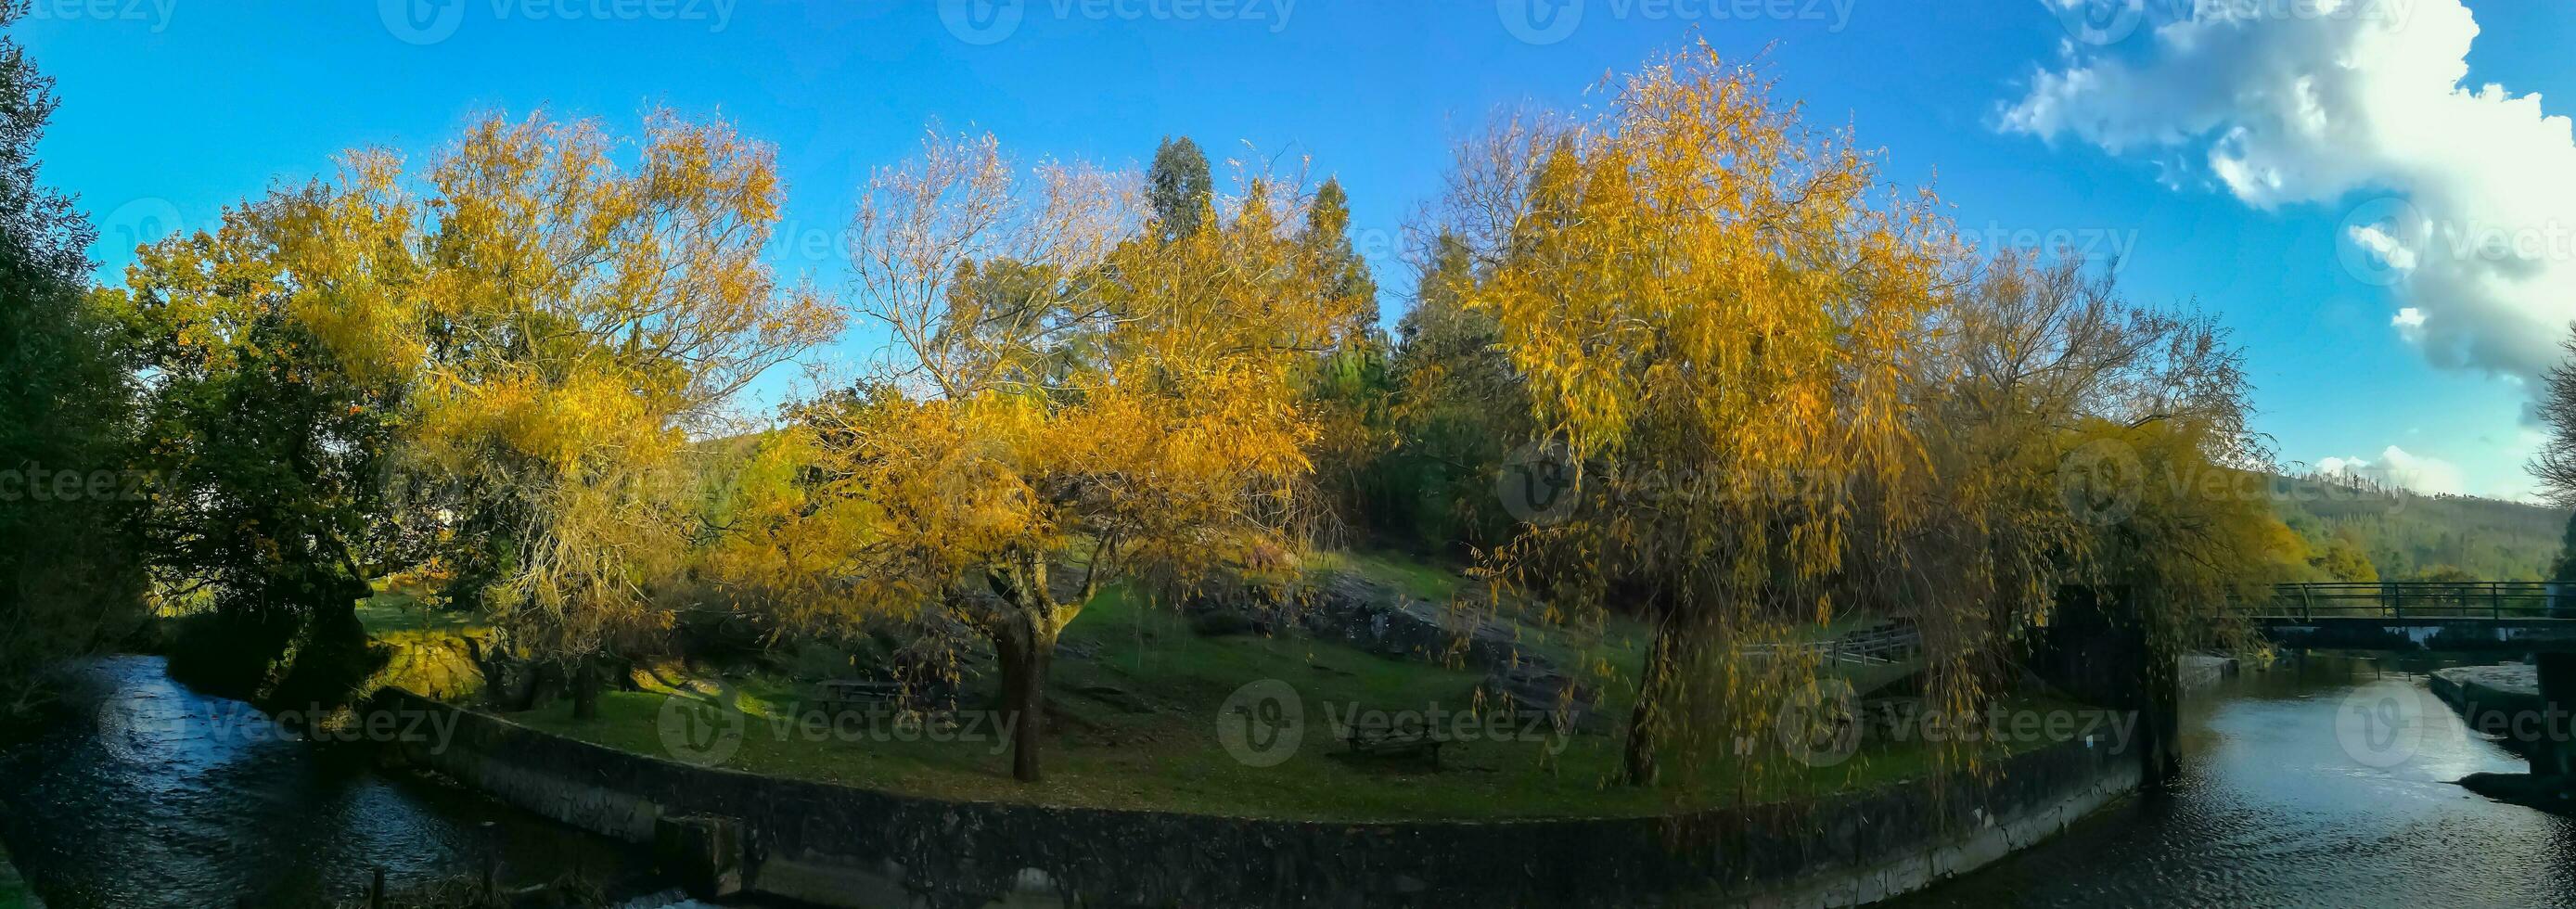 le Naturel beauté de l'automne couleurs et chute feuilles photo